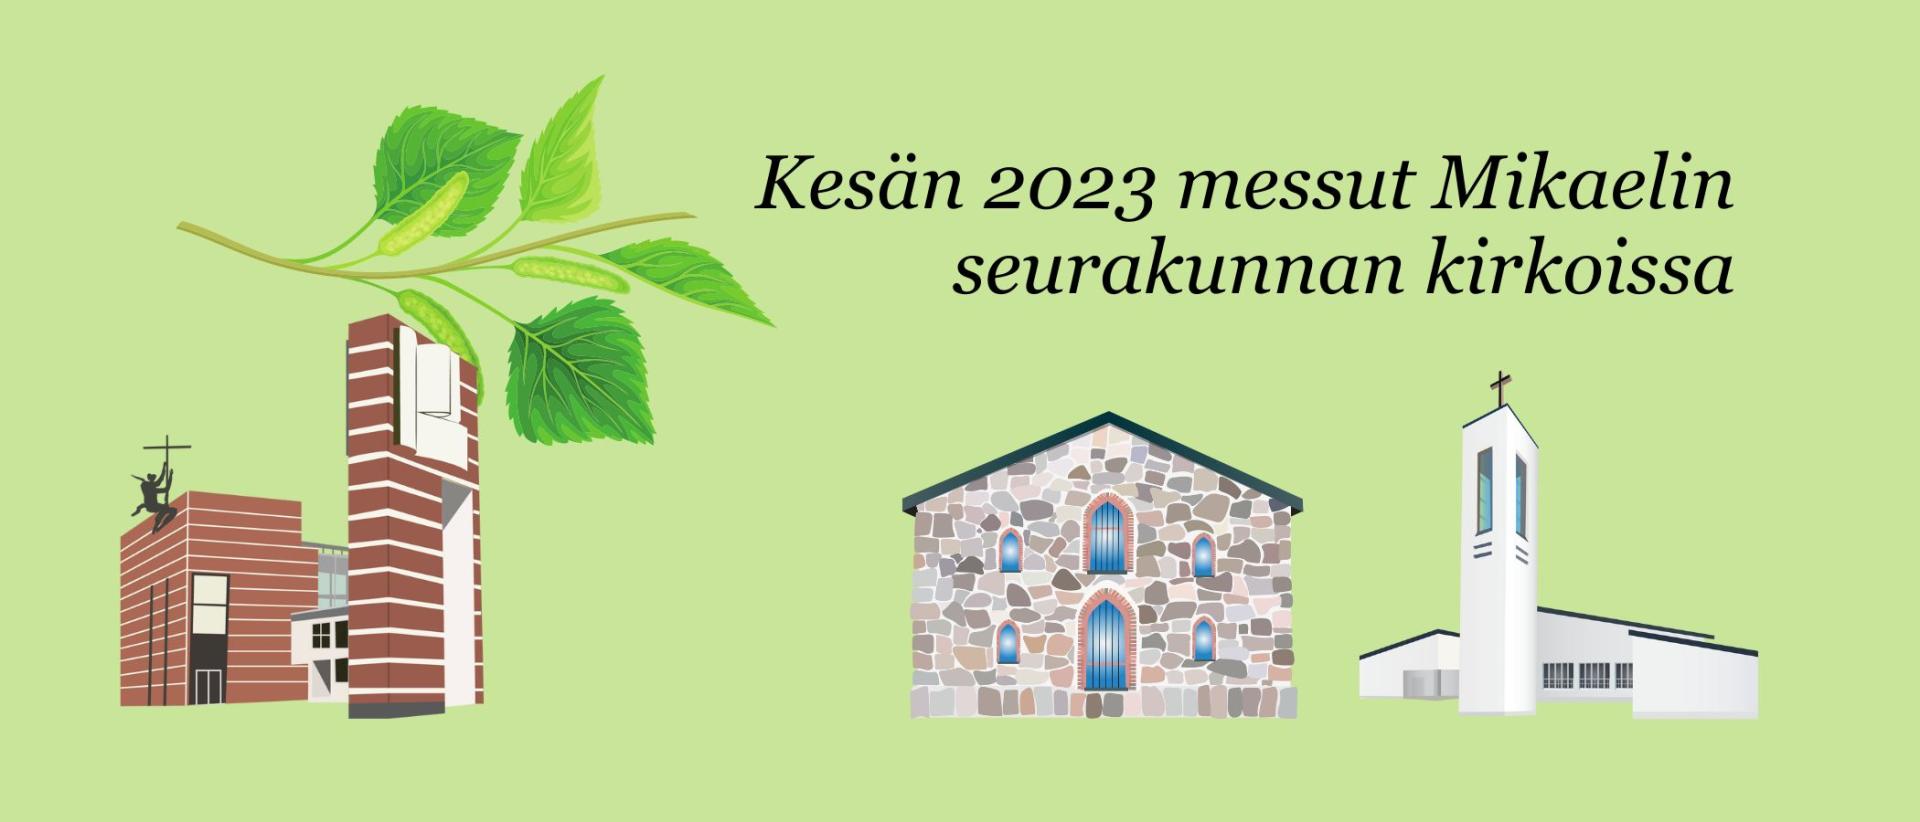 Kesän 2023 messut ja jumalanpalvelukset Mikaelin seurakunnassa Vihreällä pohjalla kirkkojen piirroskuvat